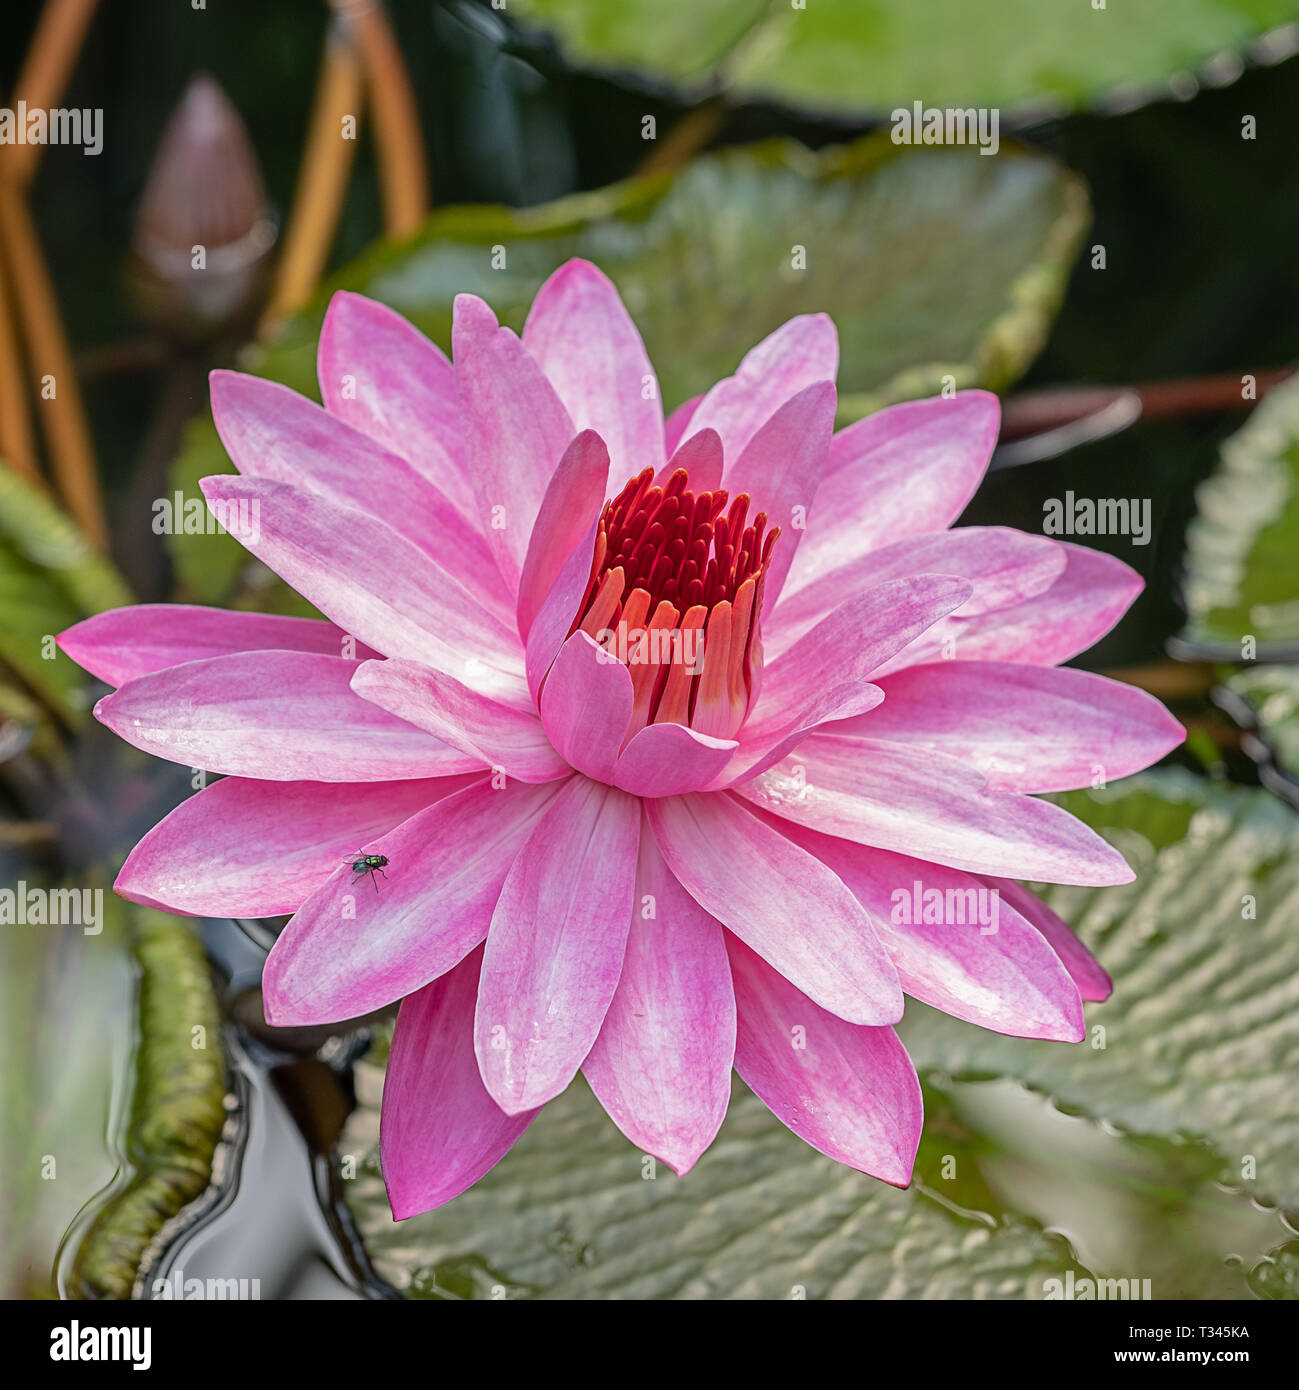 Pink Water Lily blooming con un poco mosca sentada sobre un pétalo Foto de stock